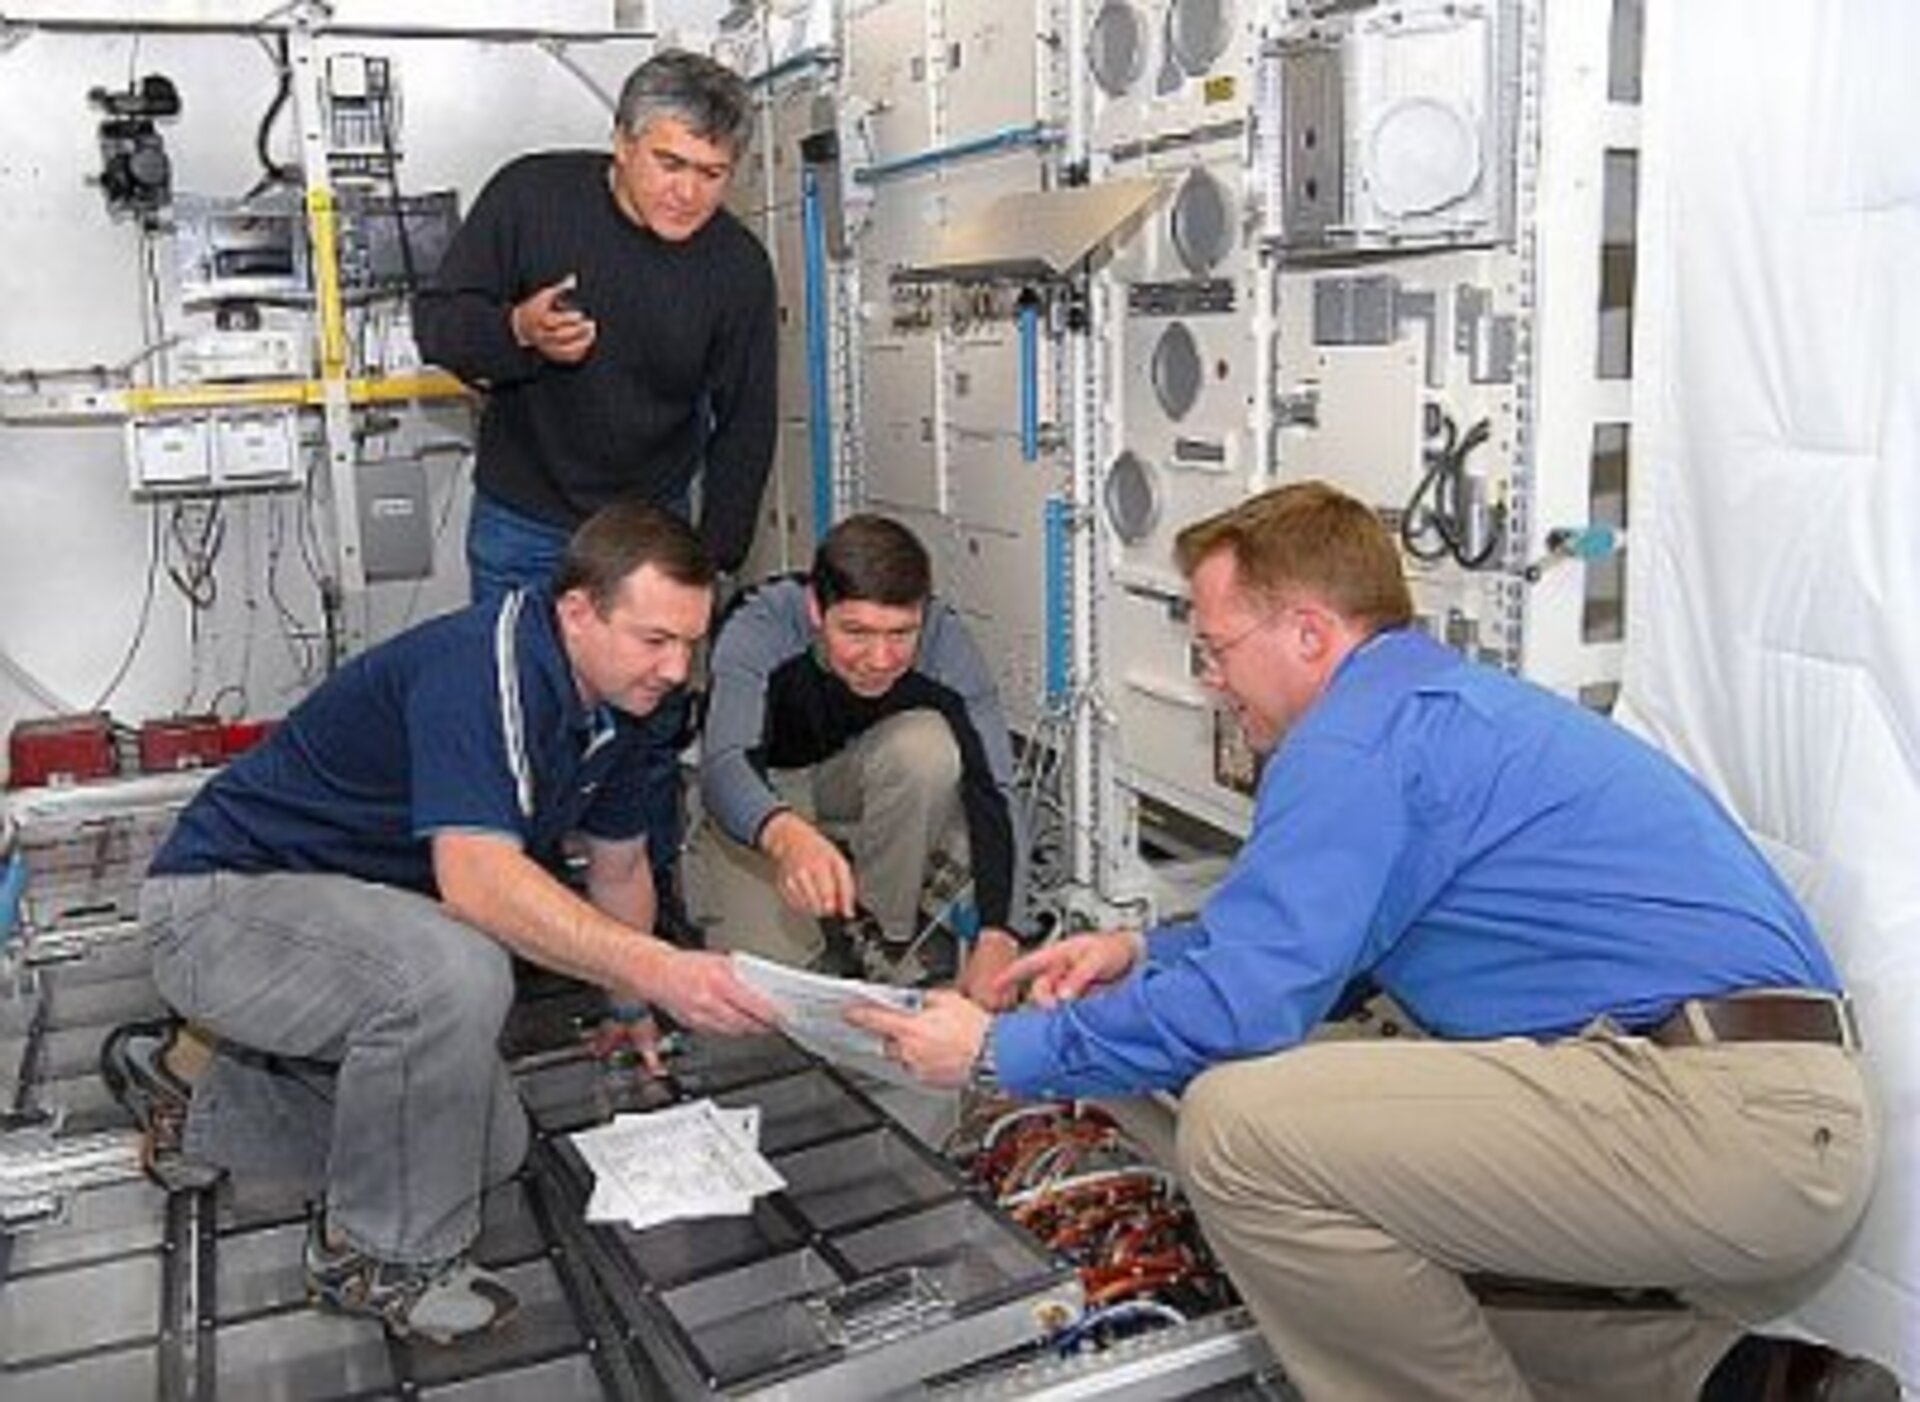 Expedition 18 crew members participate in Columbus user level training